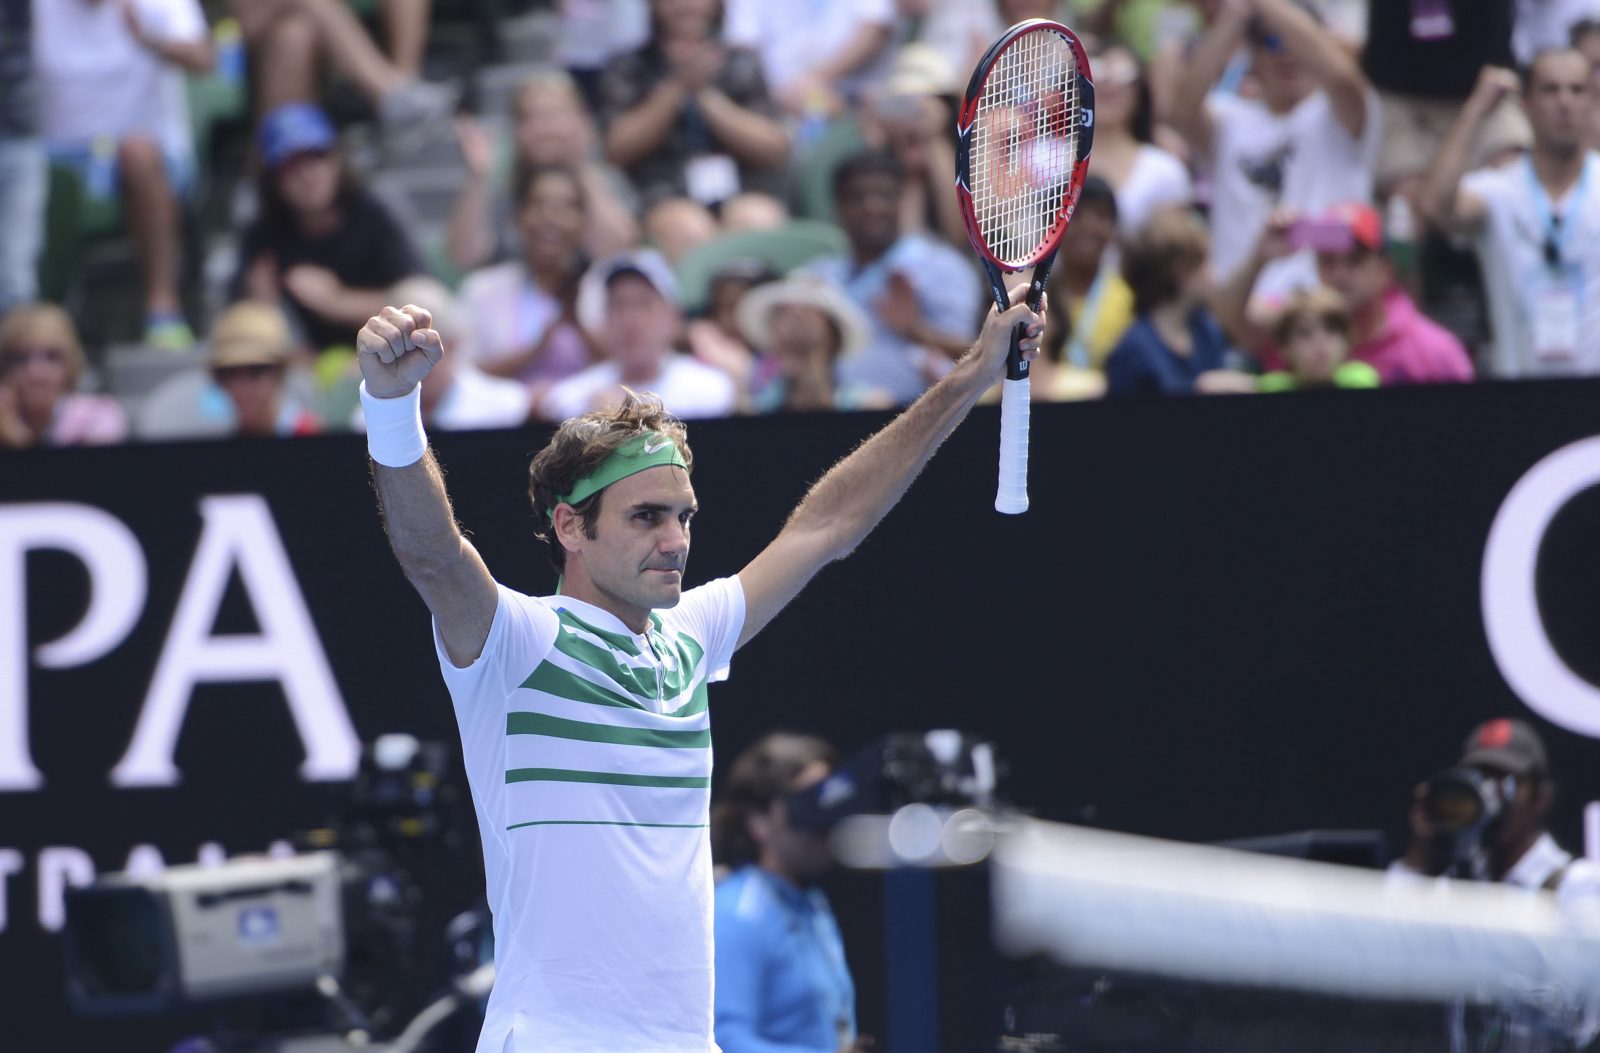 Australian Open: Federer preko Berdycha do polufinala, Life.ba